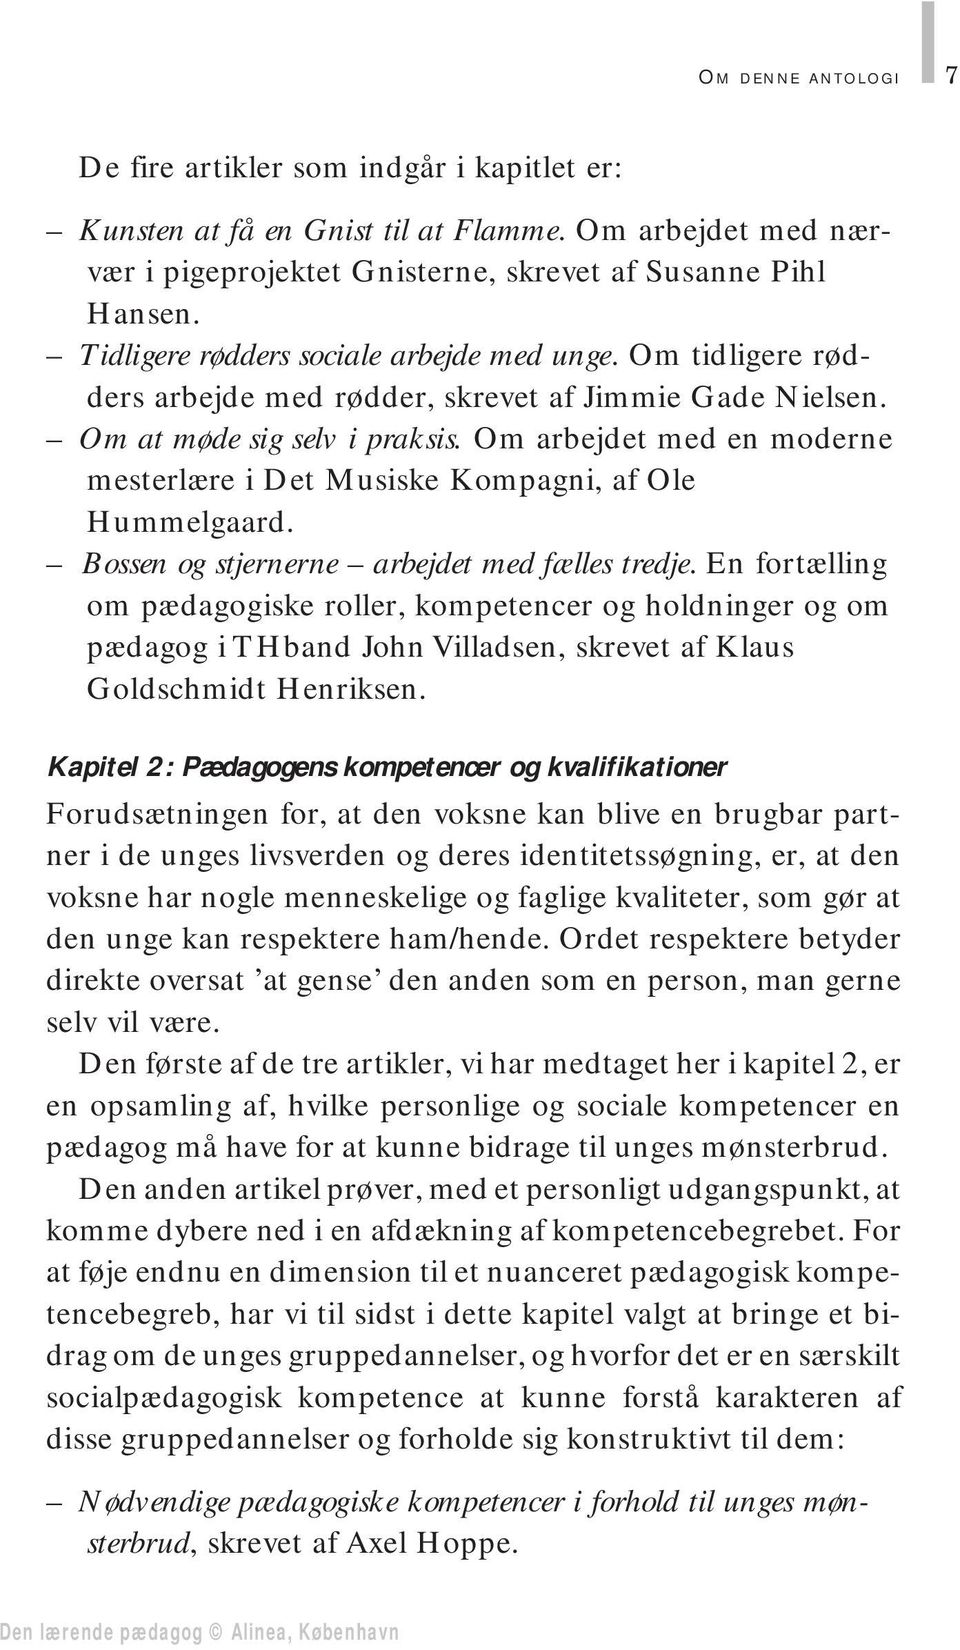 Om arbejdet med en moderne mesterlære i Det Musiske Kompagni, af Ole Hummelgaard. Bossen og stjernerne arbejdet med fælles tredje.